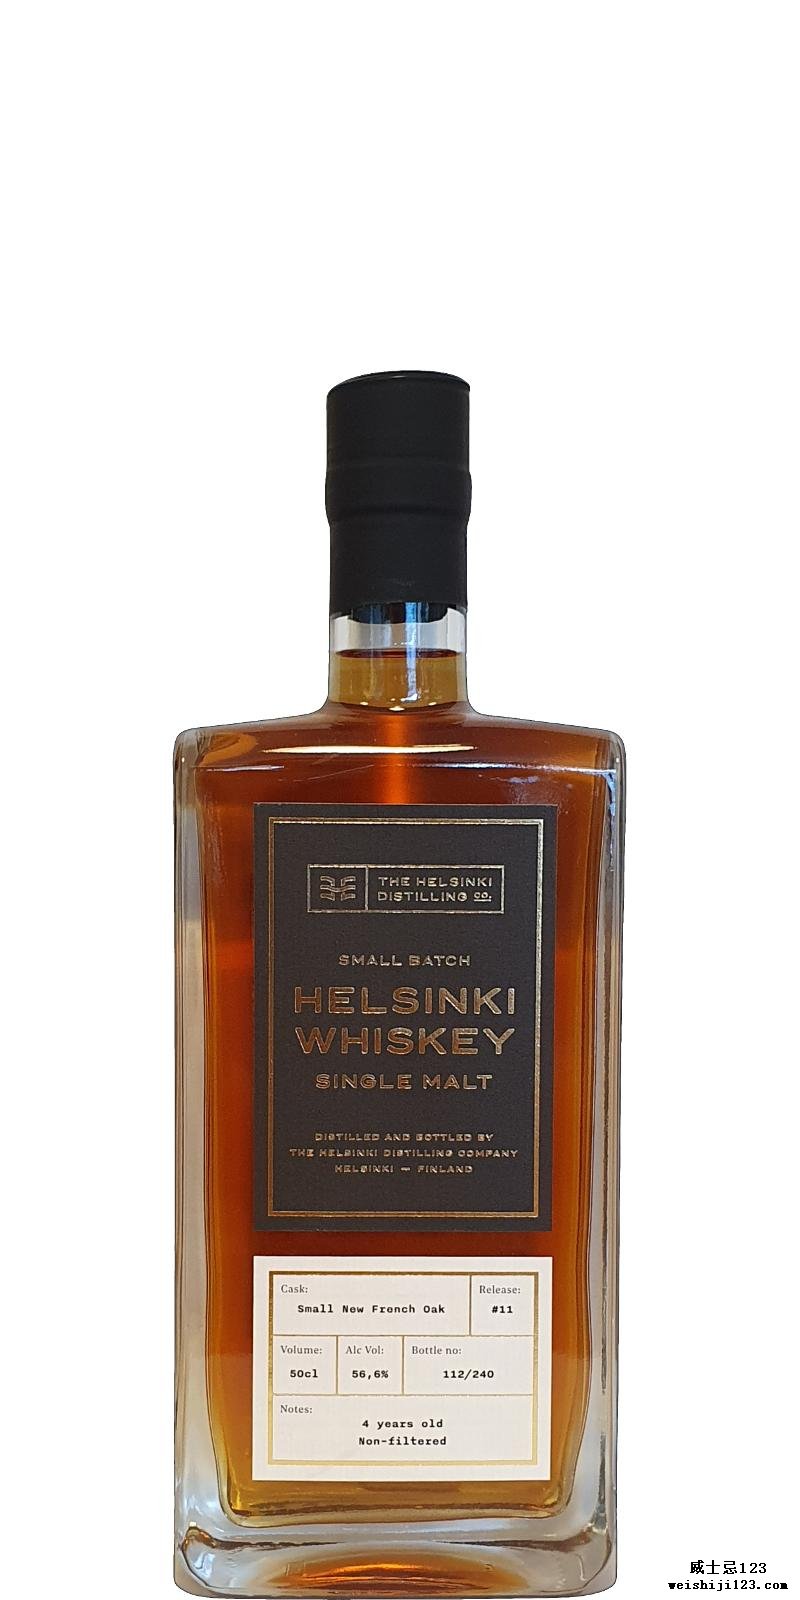 Helsinki Whiskey Single Malt - Release #11